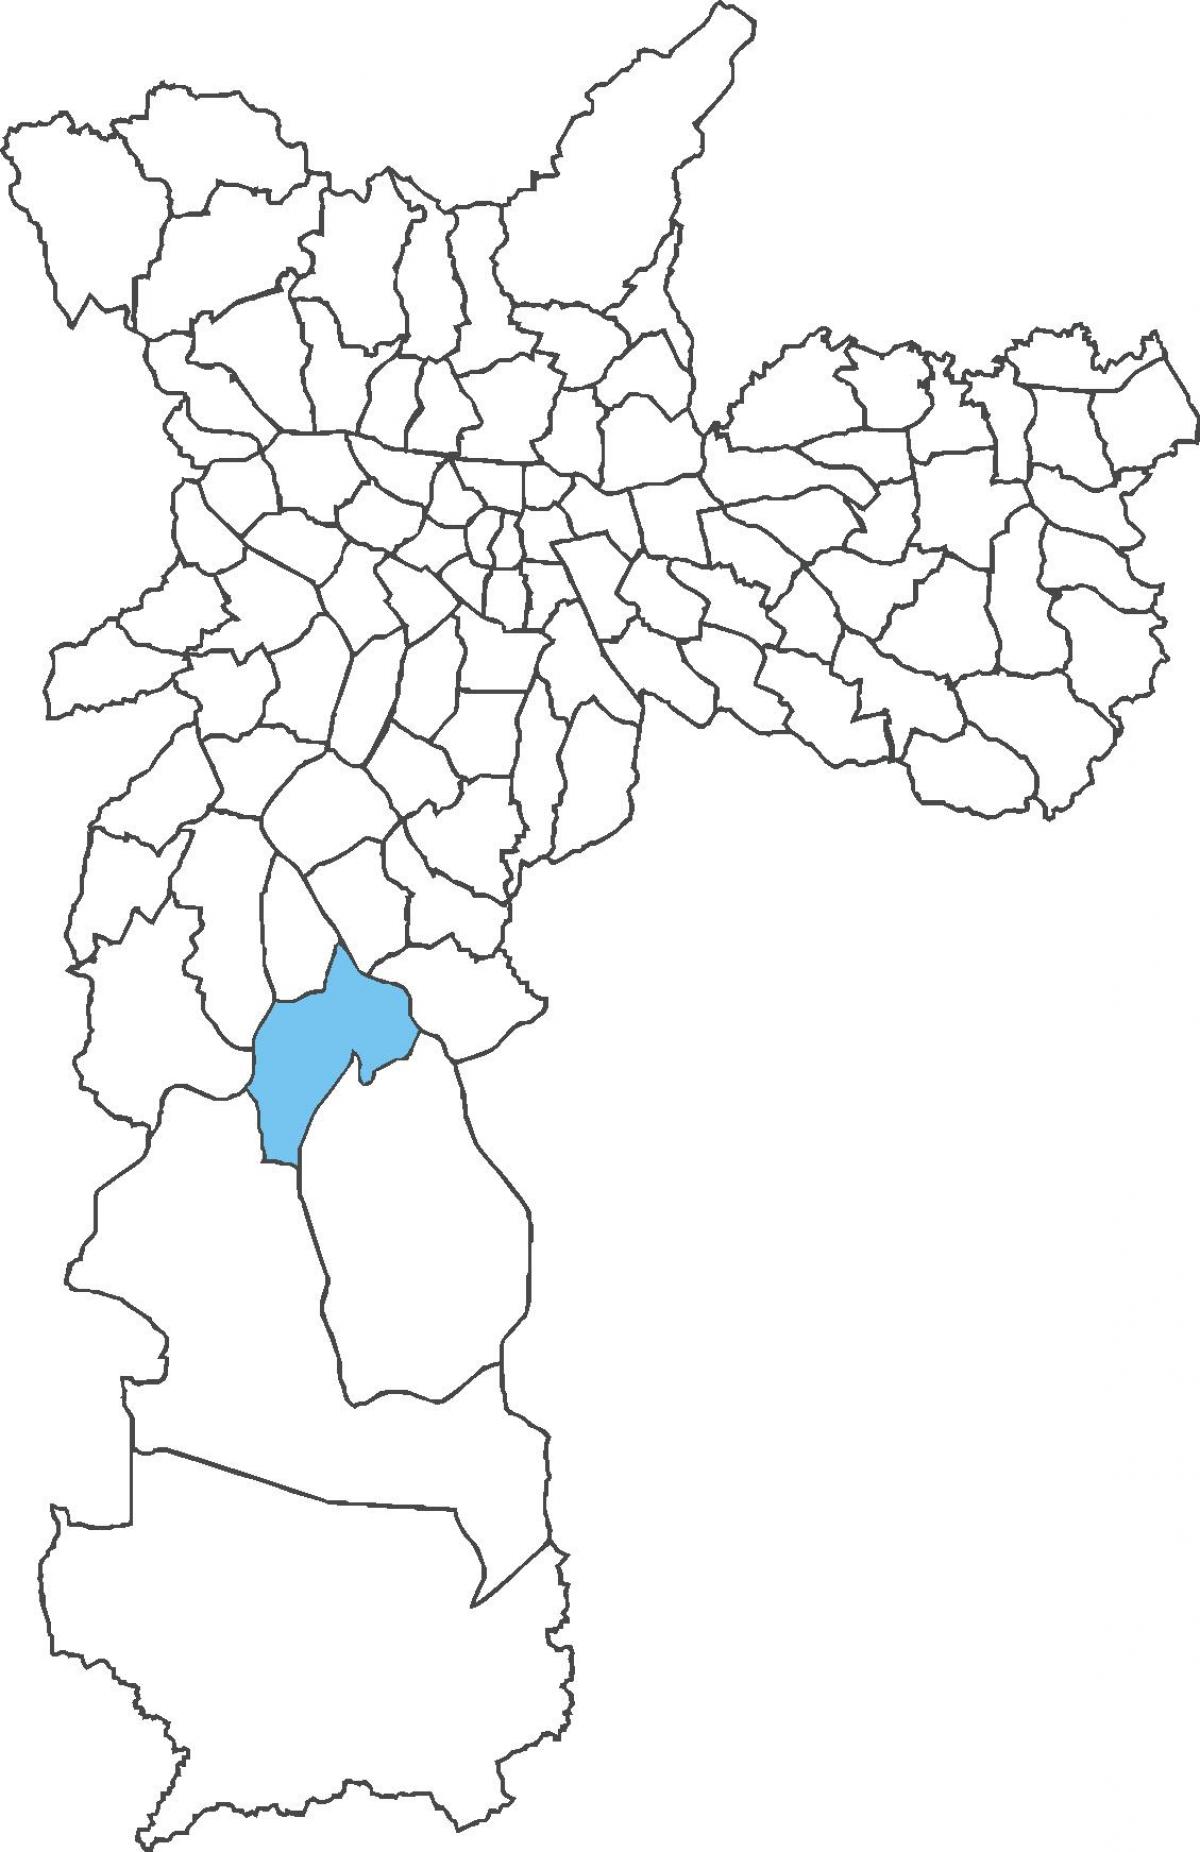 Zemljevid Cidade Dutra okrožno